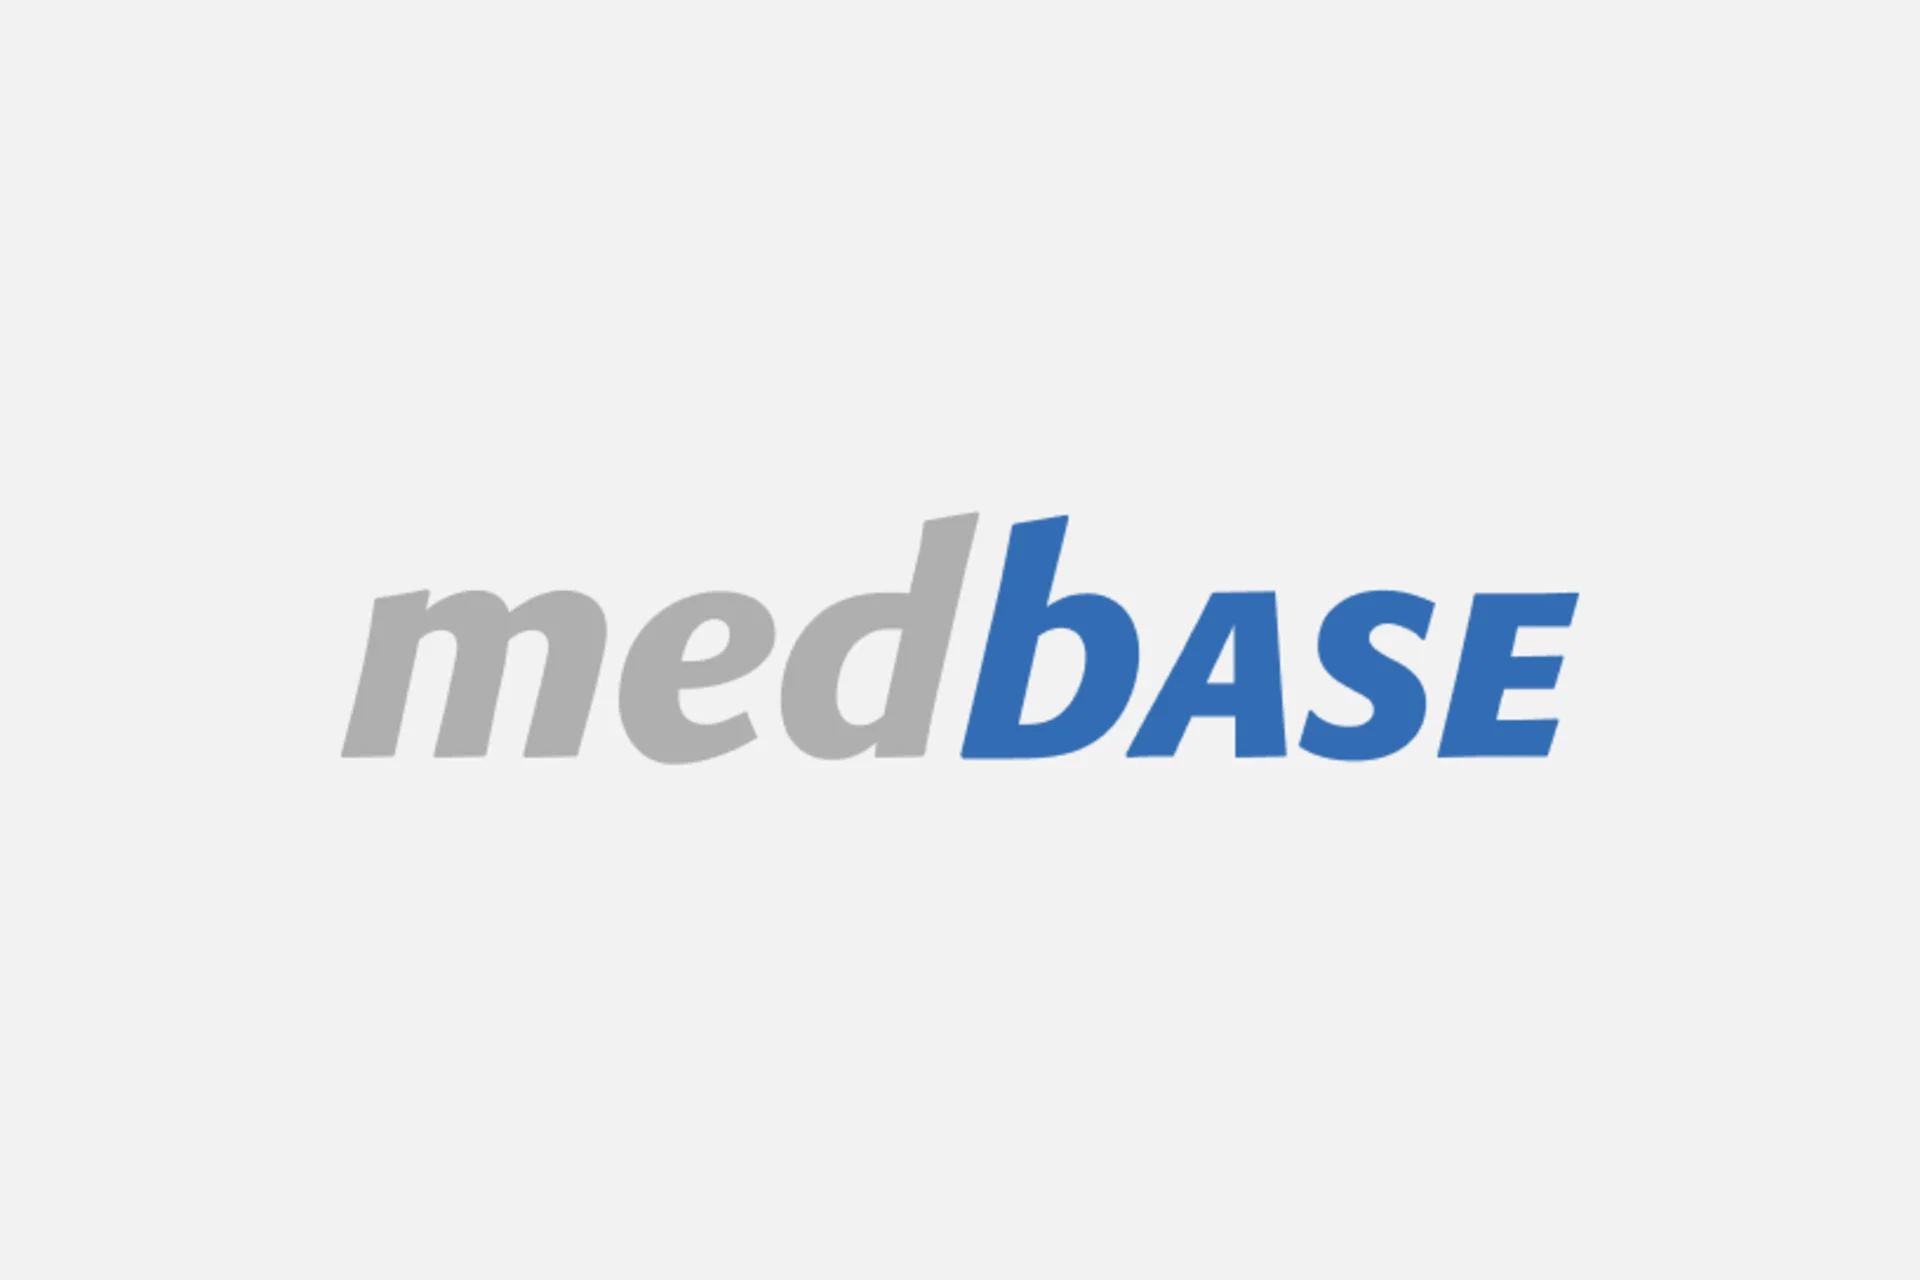 Logo Medbase